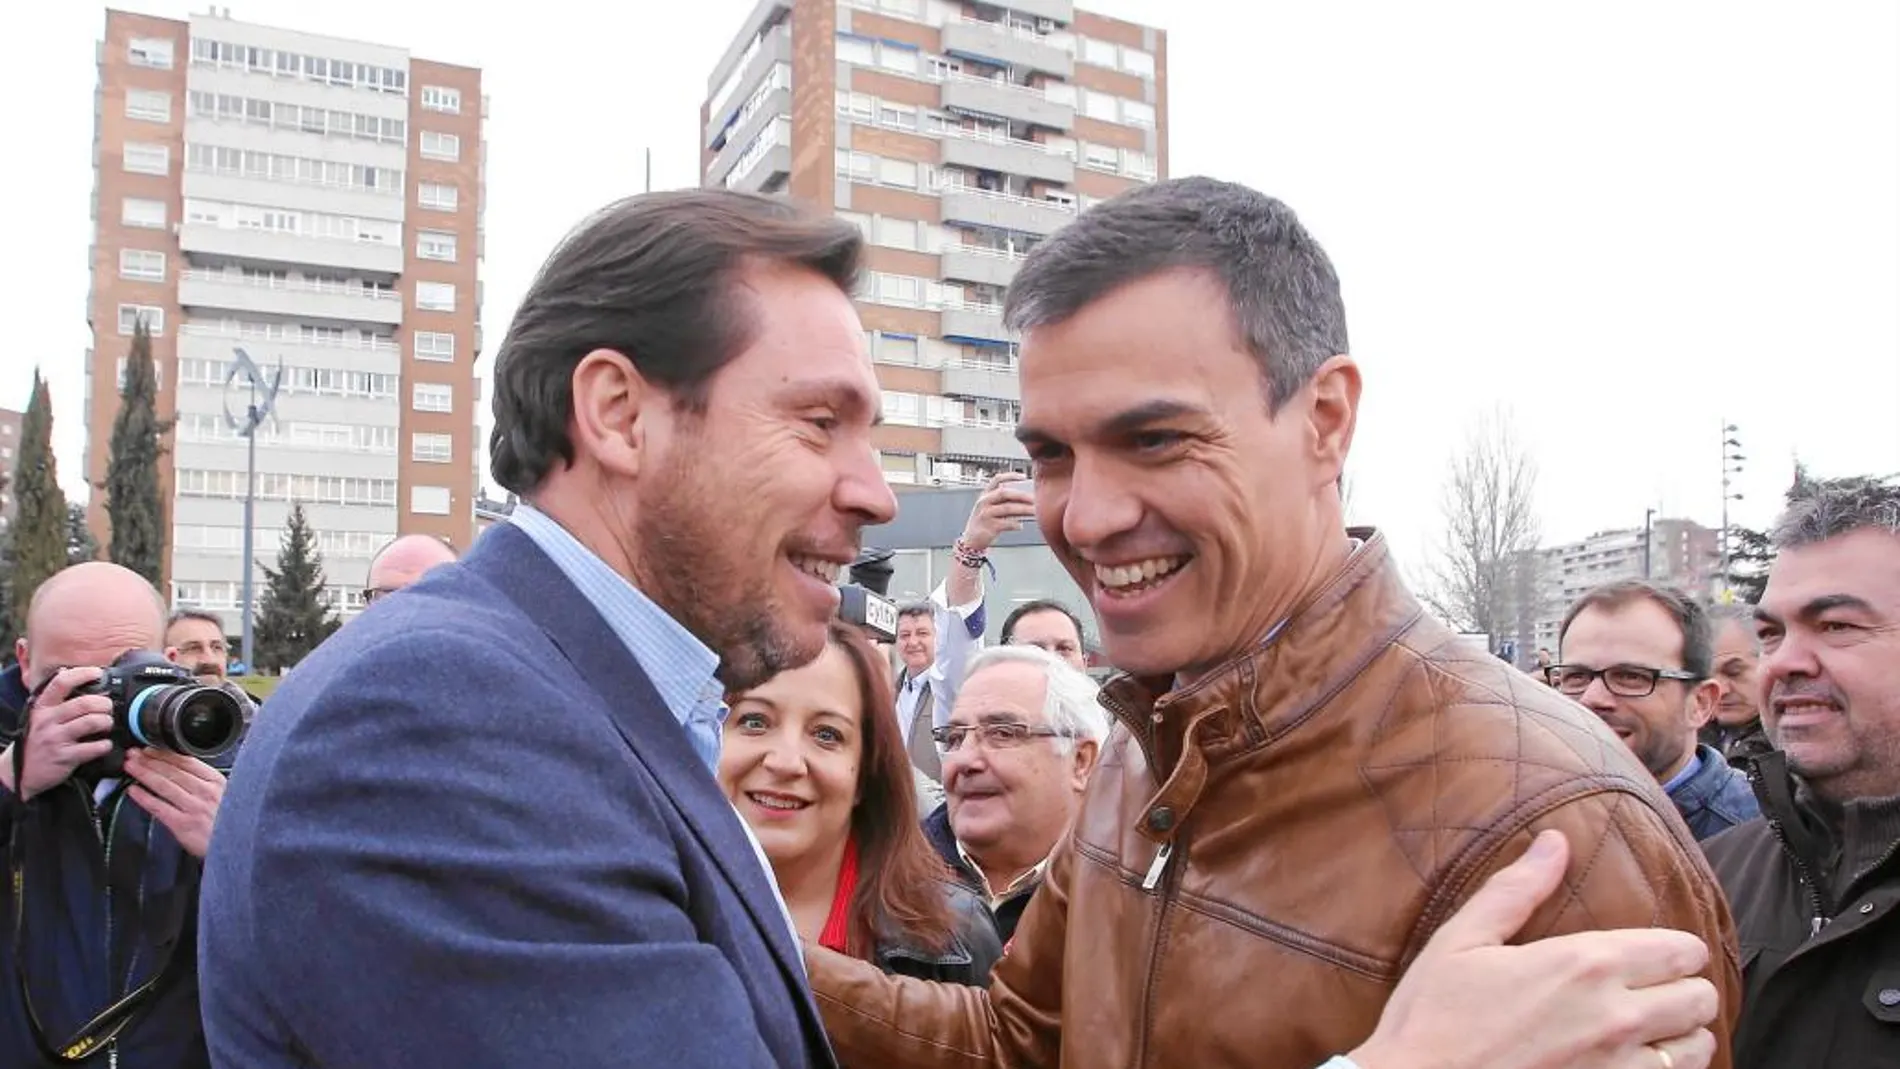 El alcalde de Valladolid, Óscar Puente, saluda amistosamente a Pedro Sánchez